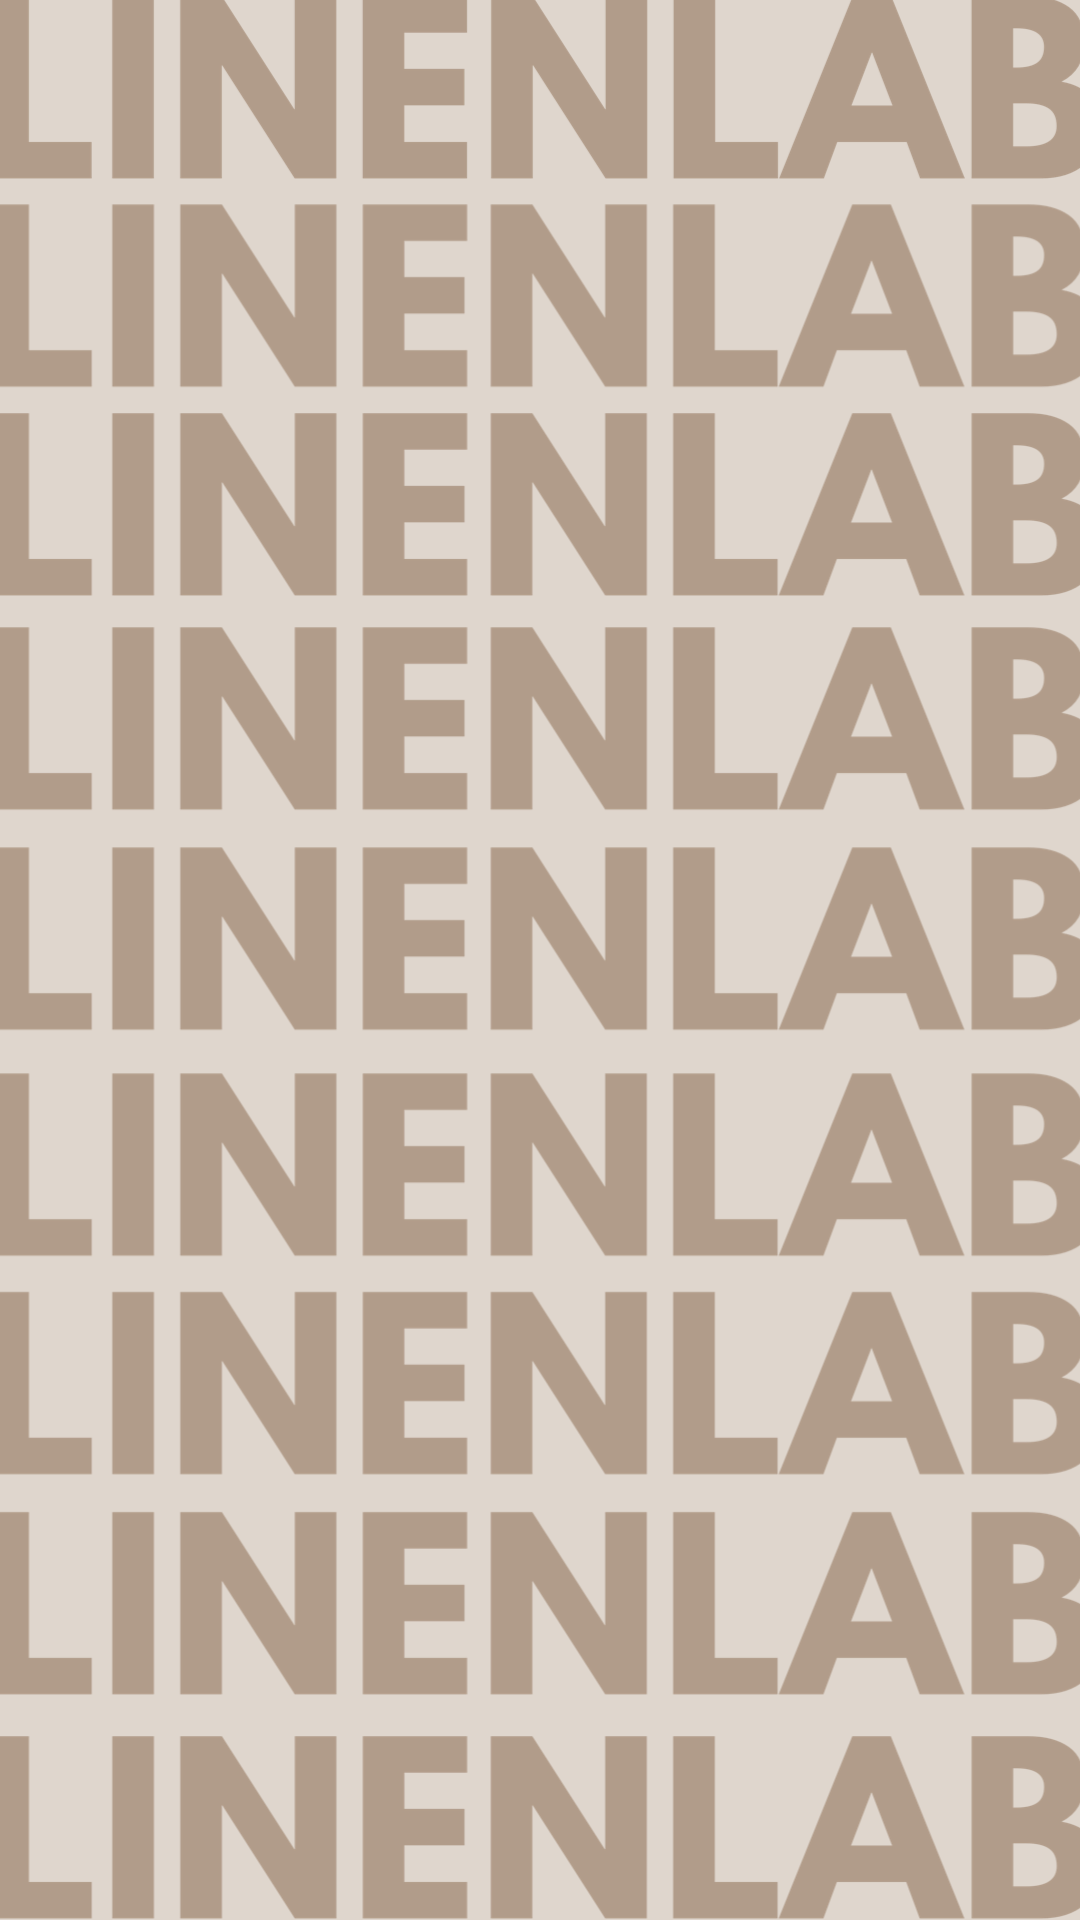 Linenlab – LINENLAB